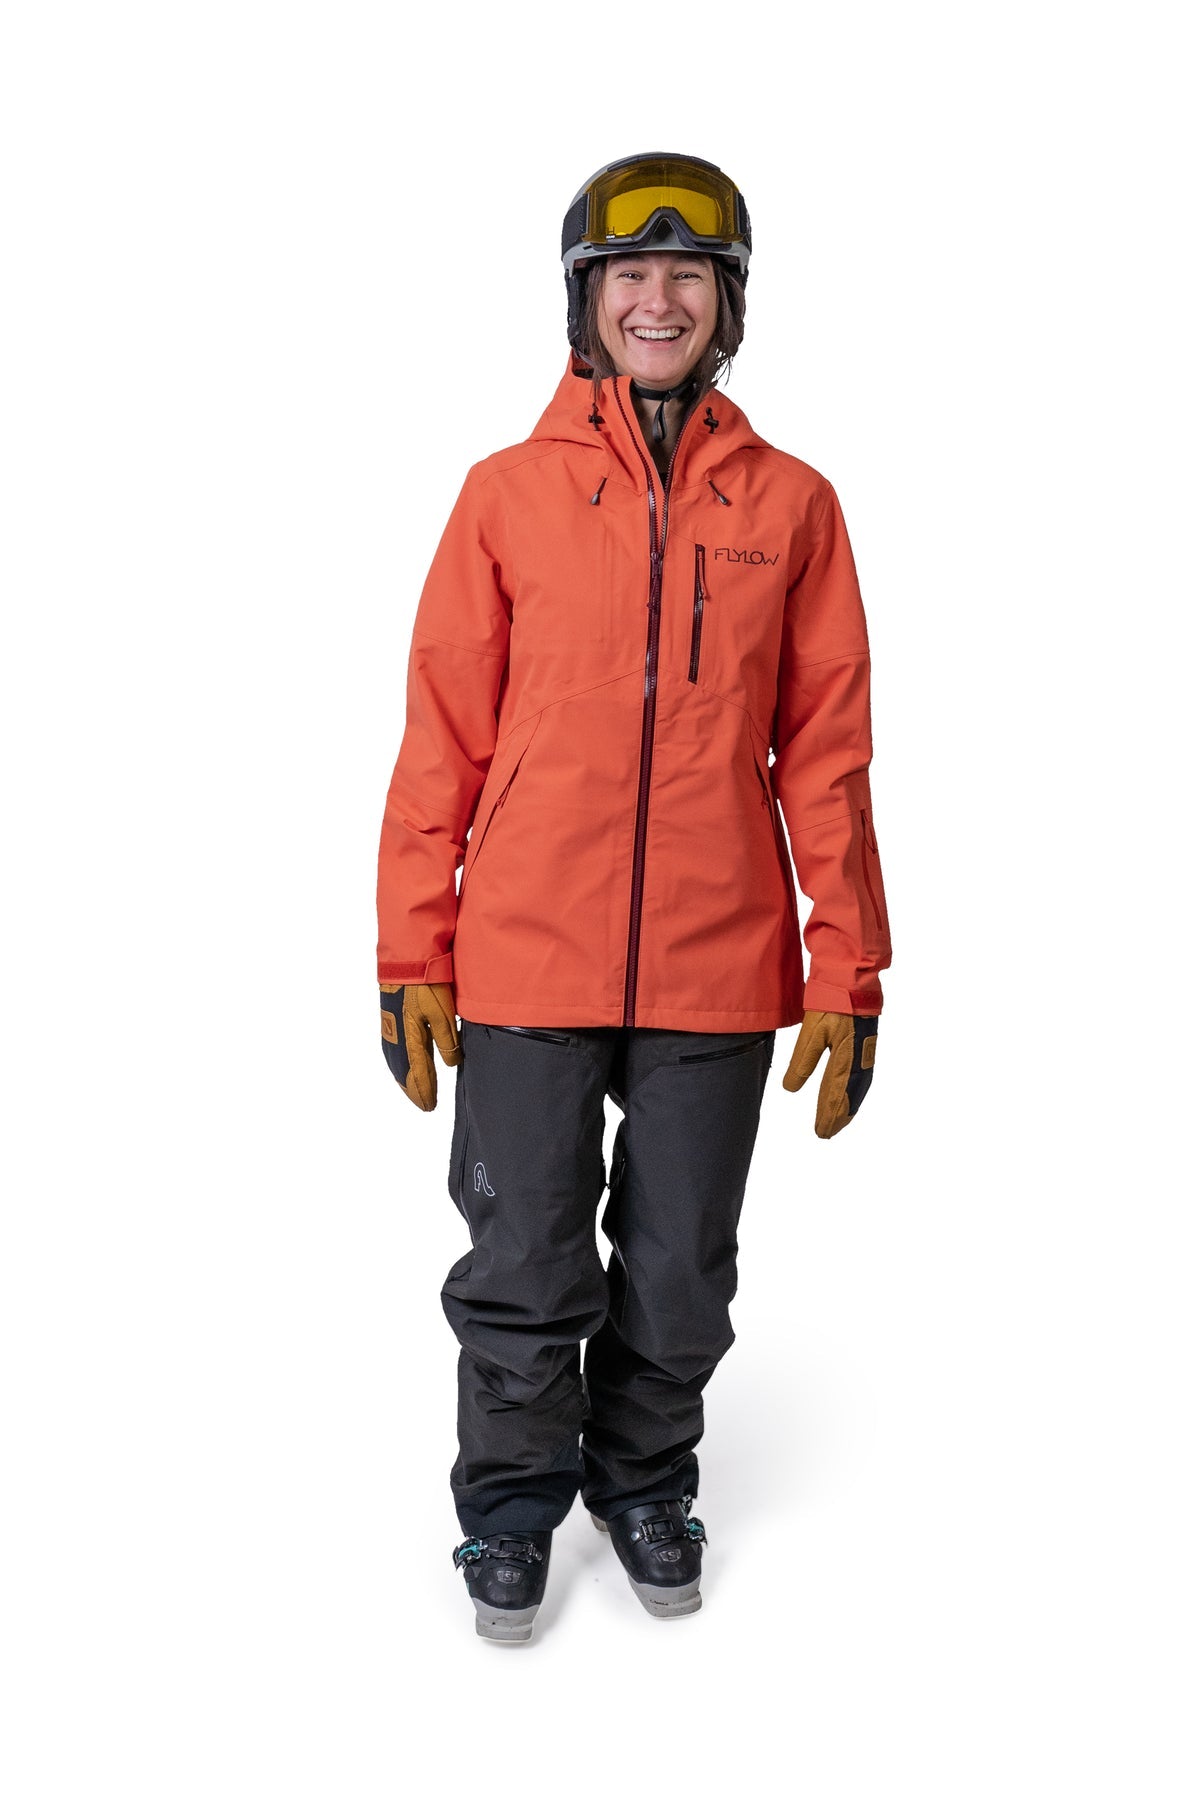 Women's warm and comfortable ski and snowboard coats - Saami Ski Shop